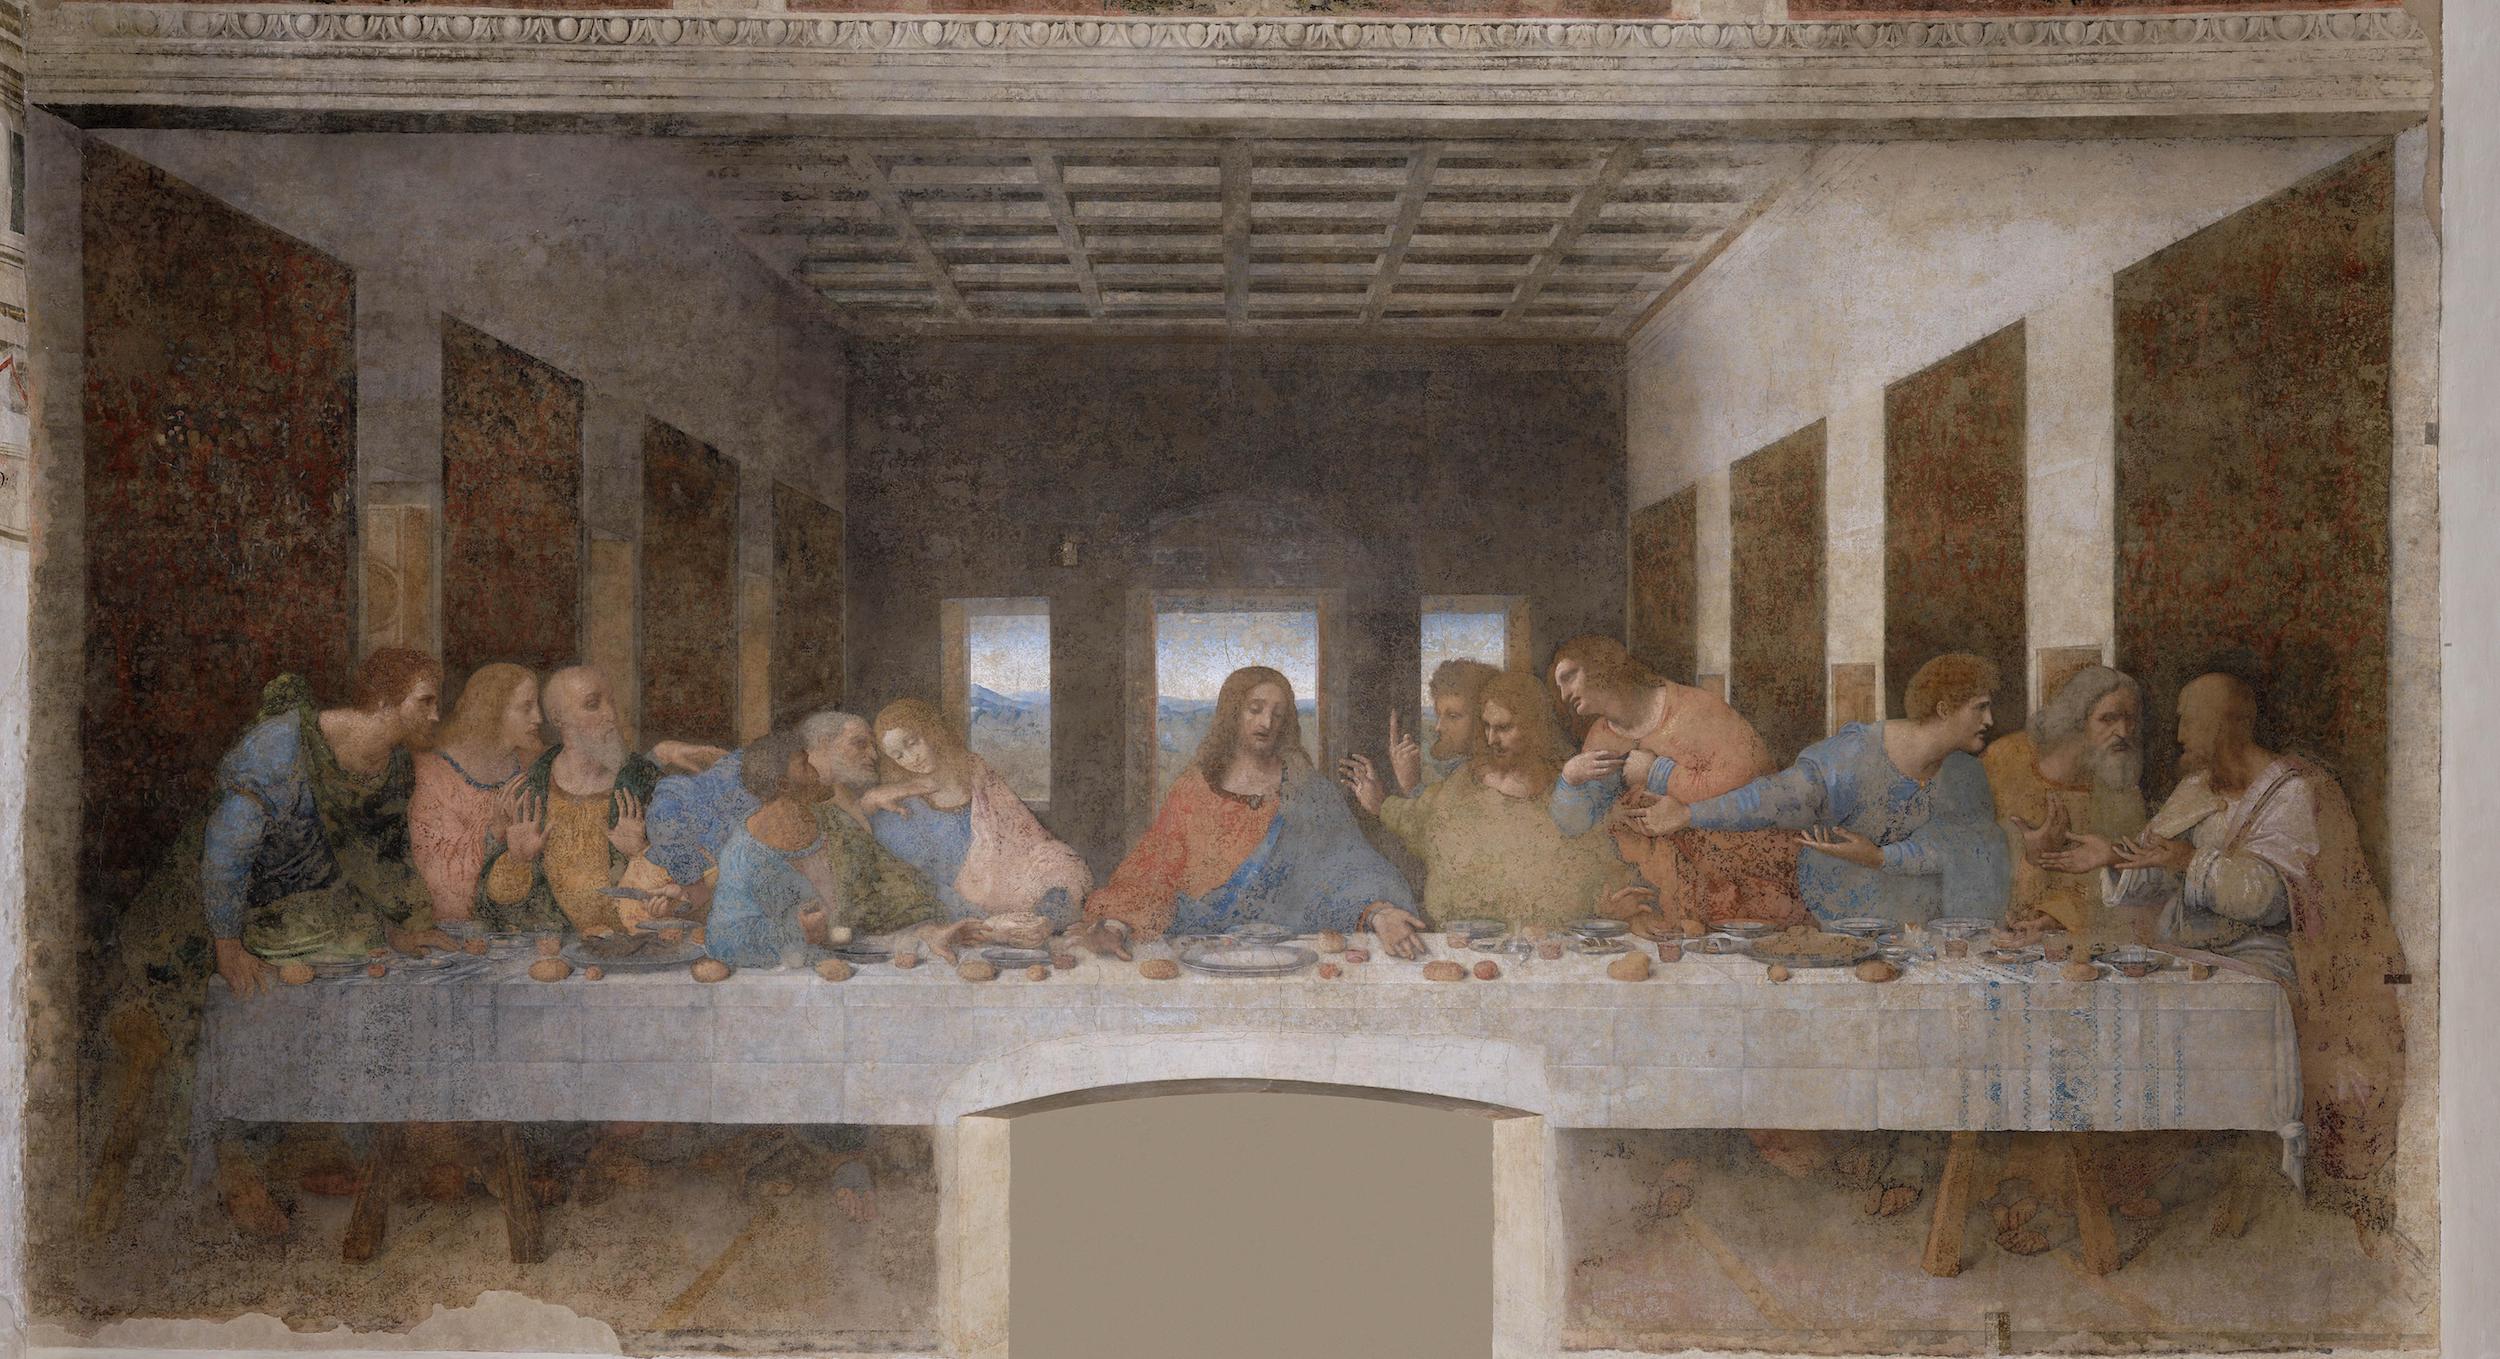 Тайная вечеря by Leonardo da Vinci - 1495-1498 - 460 x 880 см 